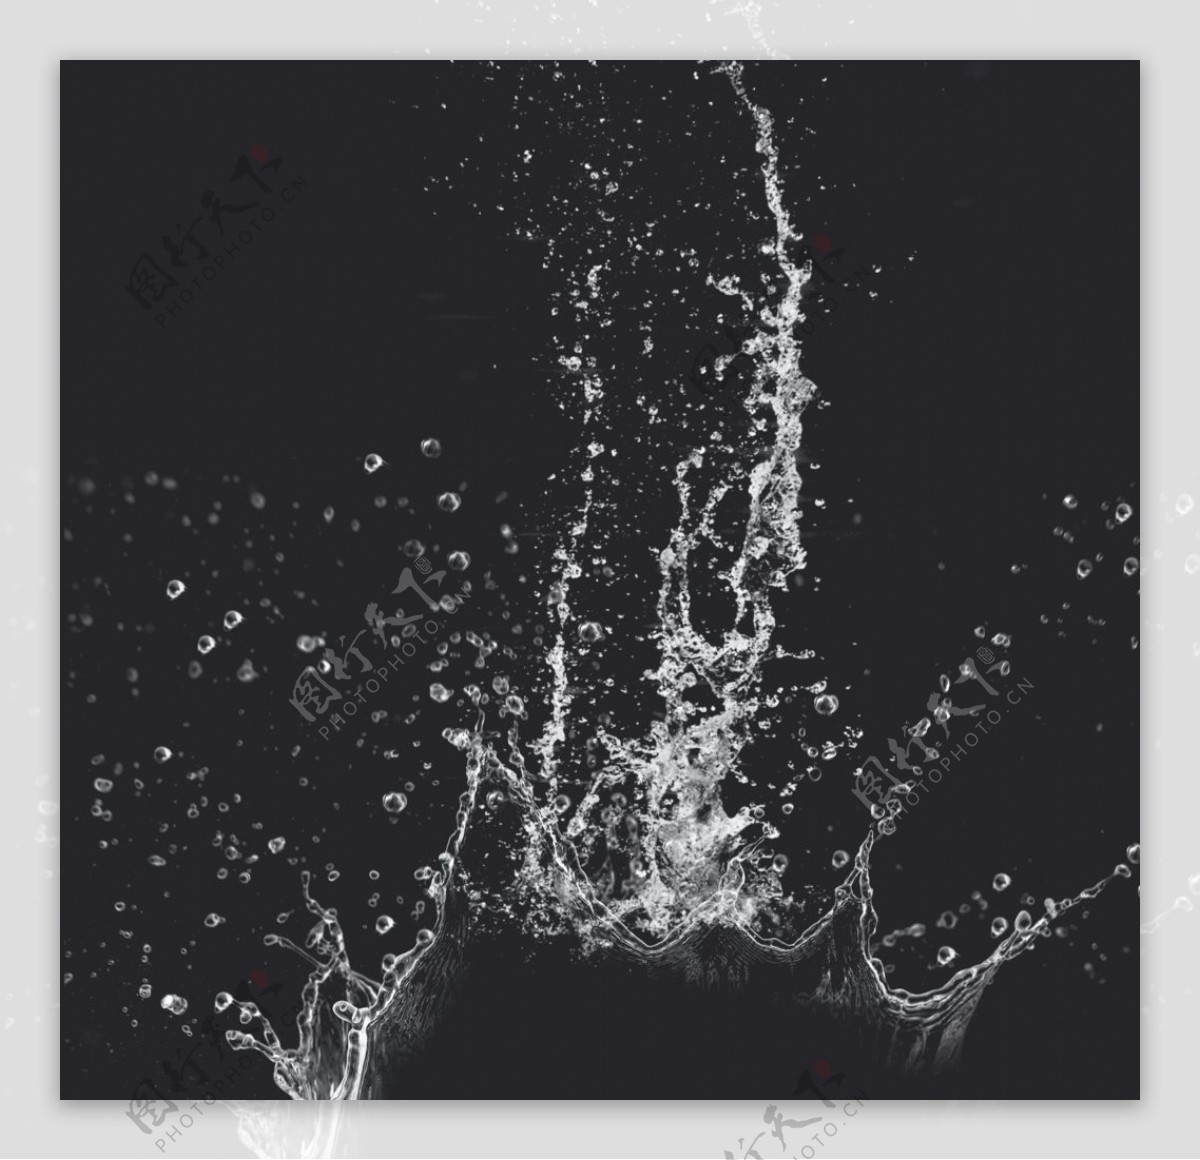 溅起的白色水滴水花元素图片